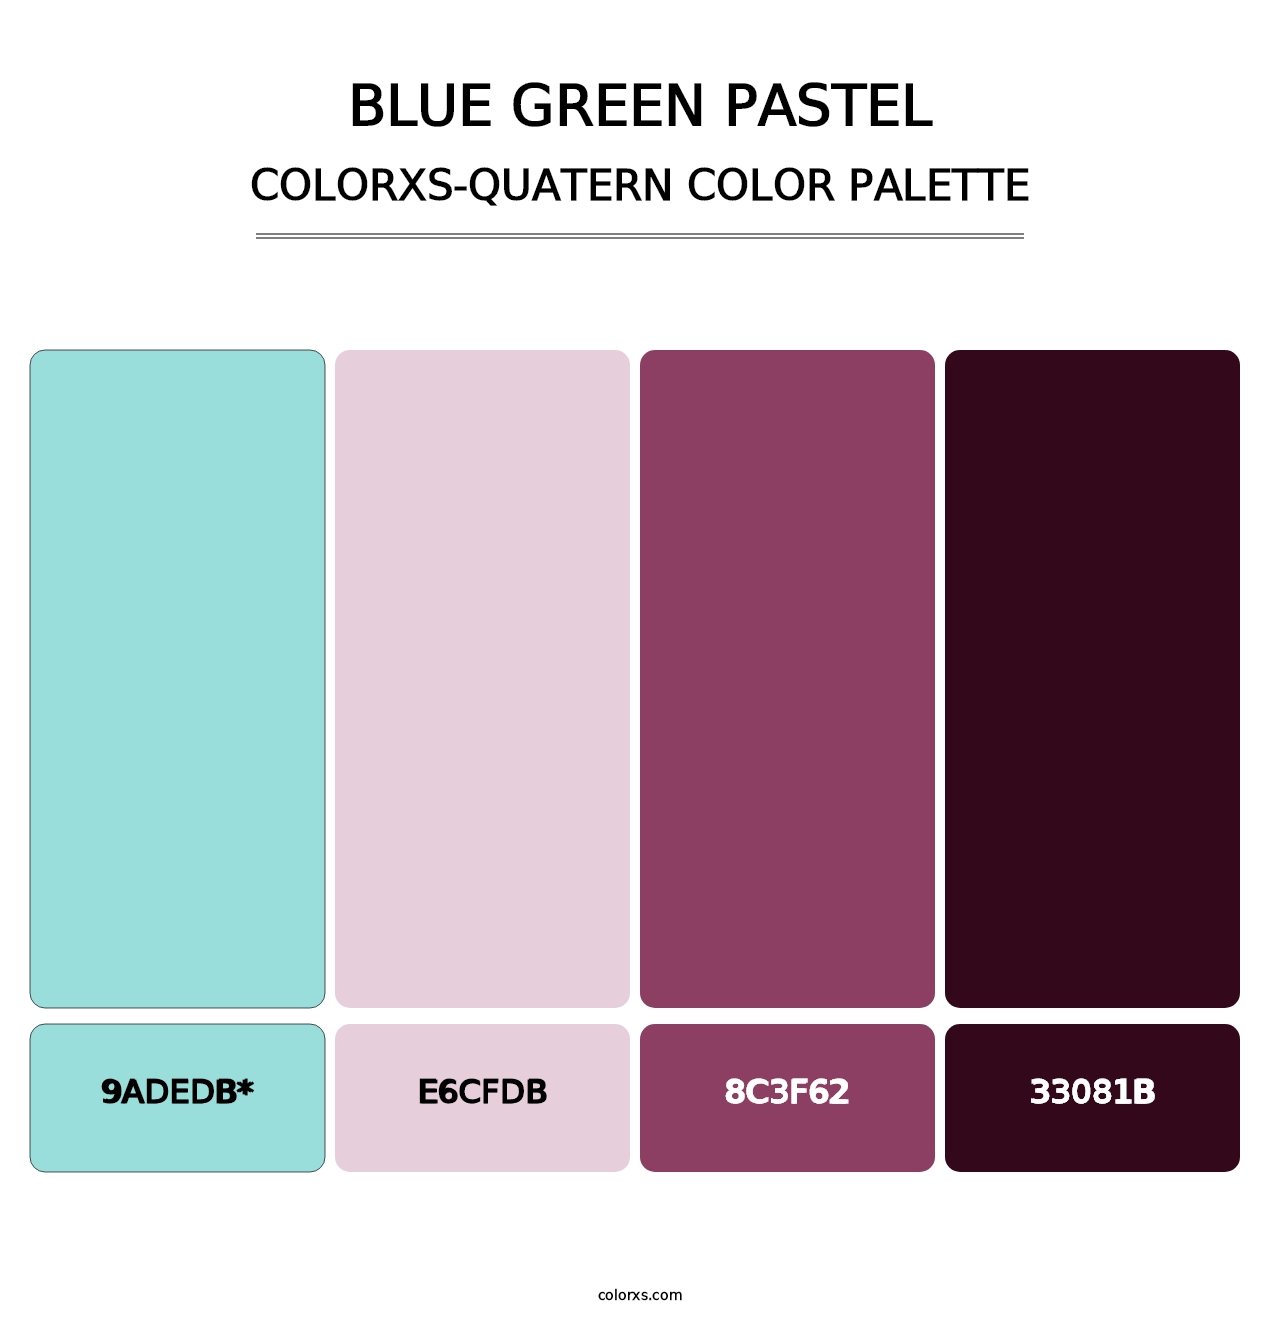 Blue Green Pastel - Colorxs Quatern Palette